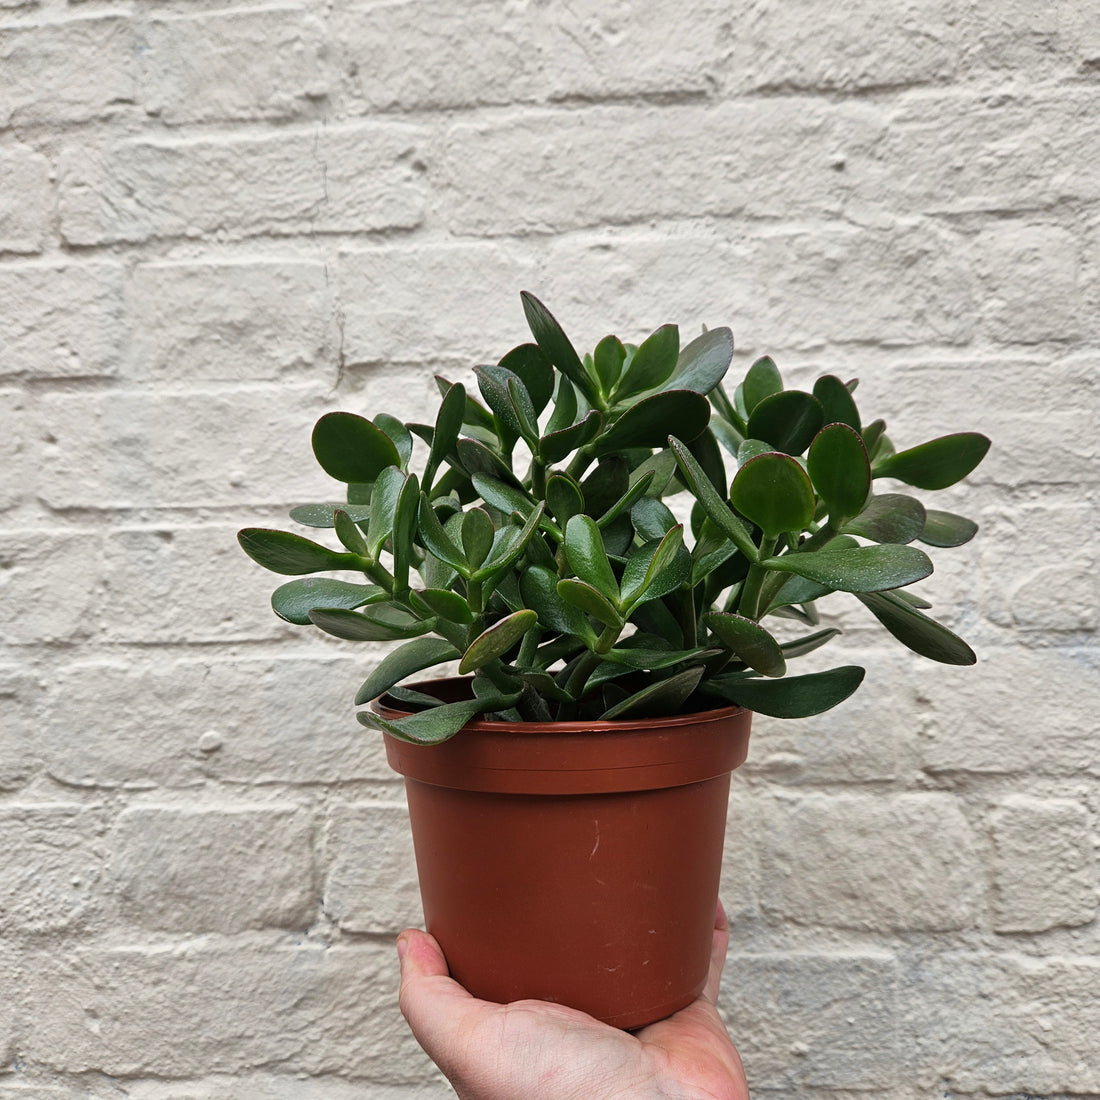 Crassula ovata (Jade plant/Succulent)